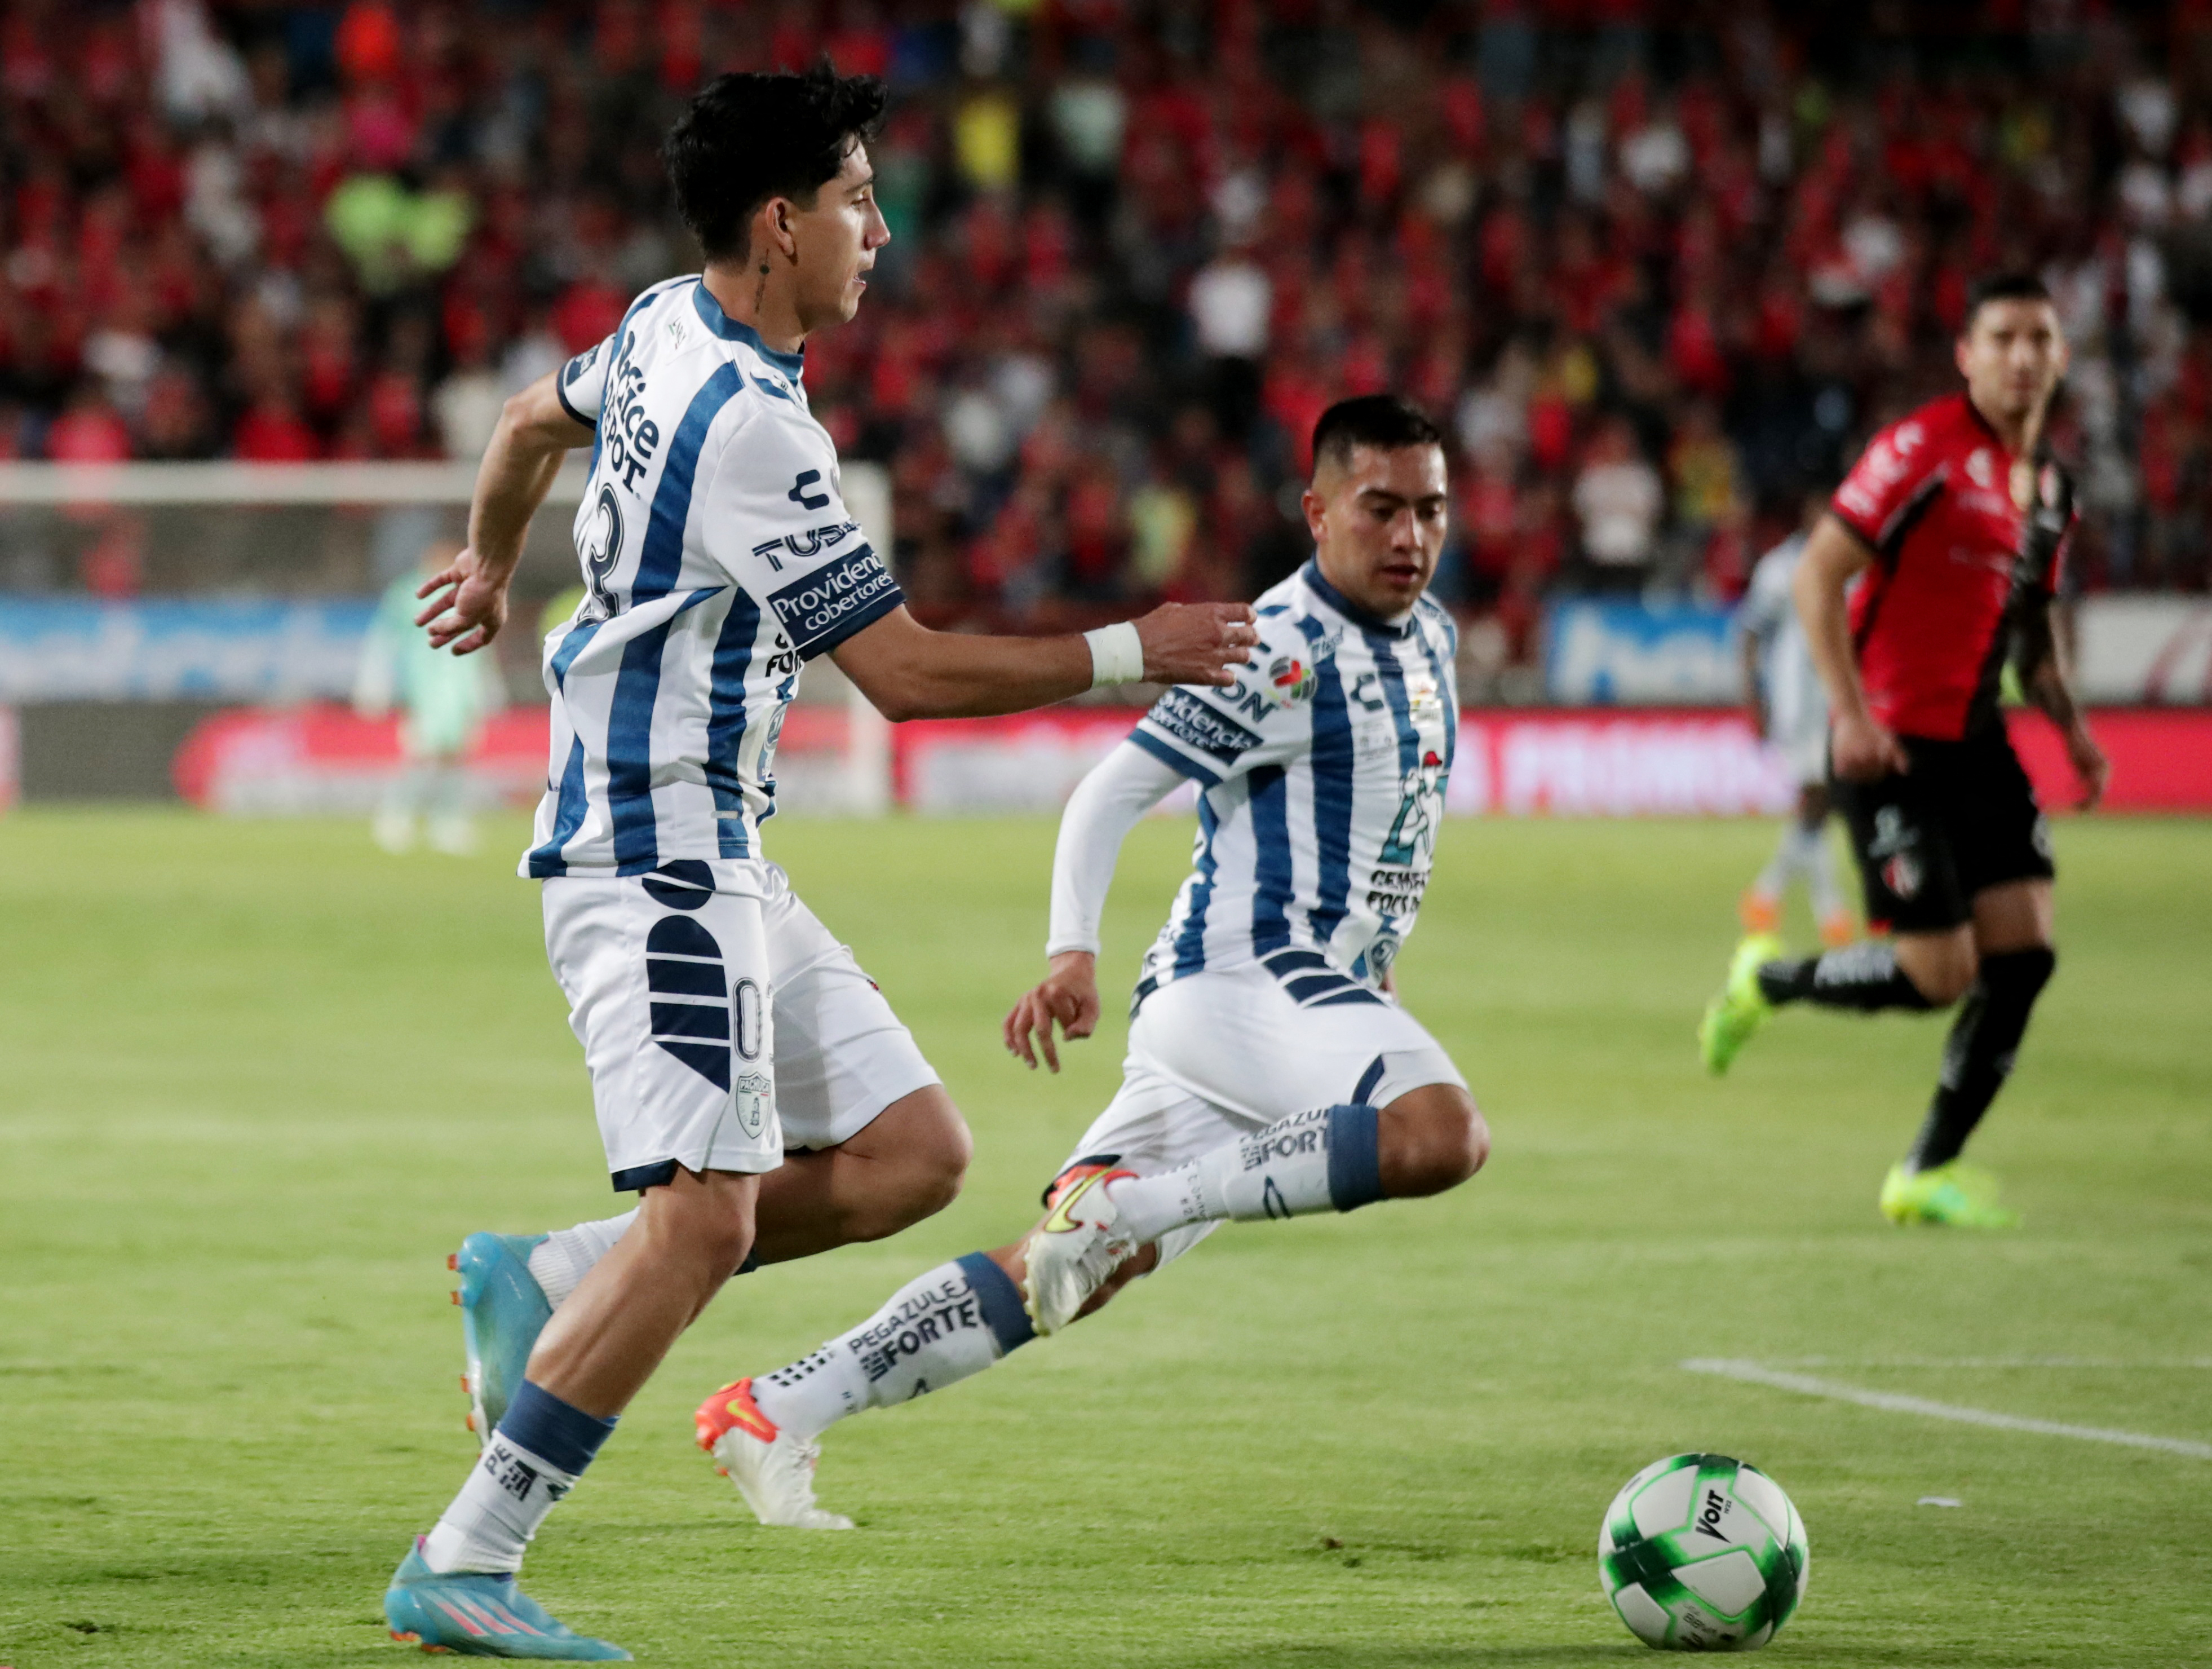 Atlas se impuso a Pachuca en la final del futbol mexicano

Foto: REUTERS/Henry Romero